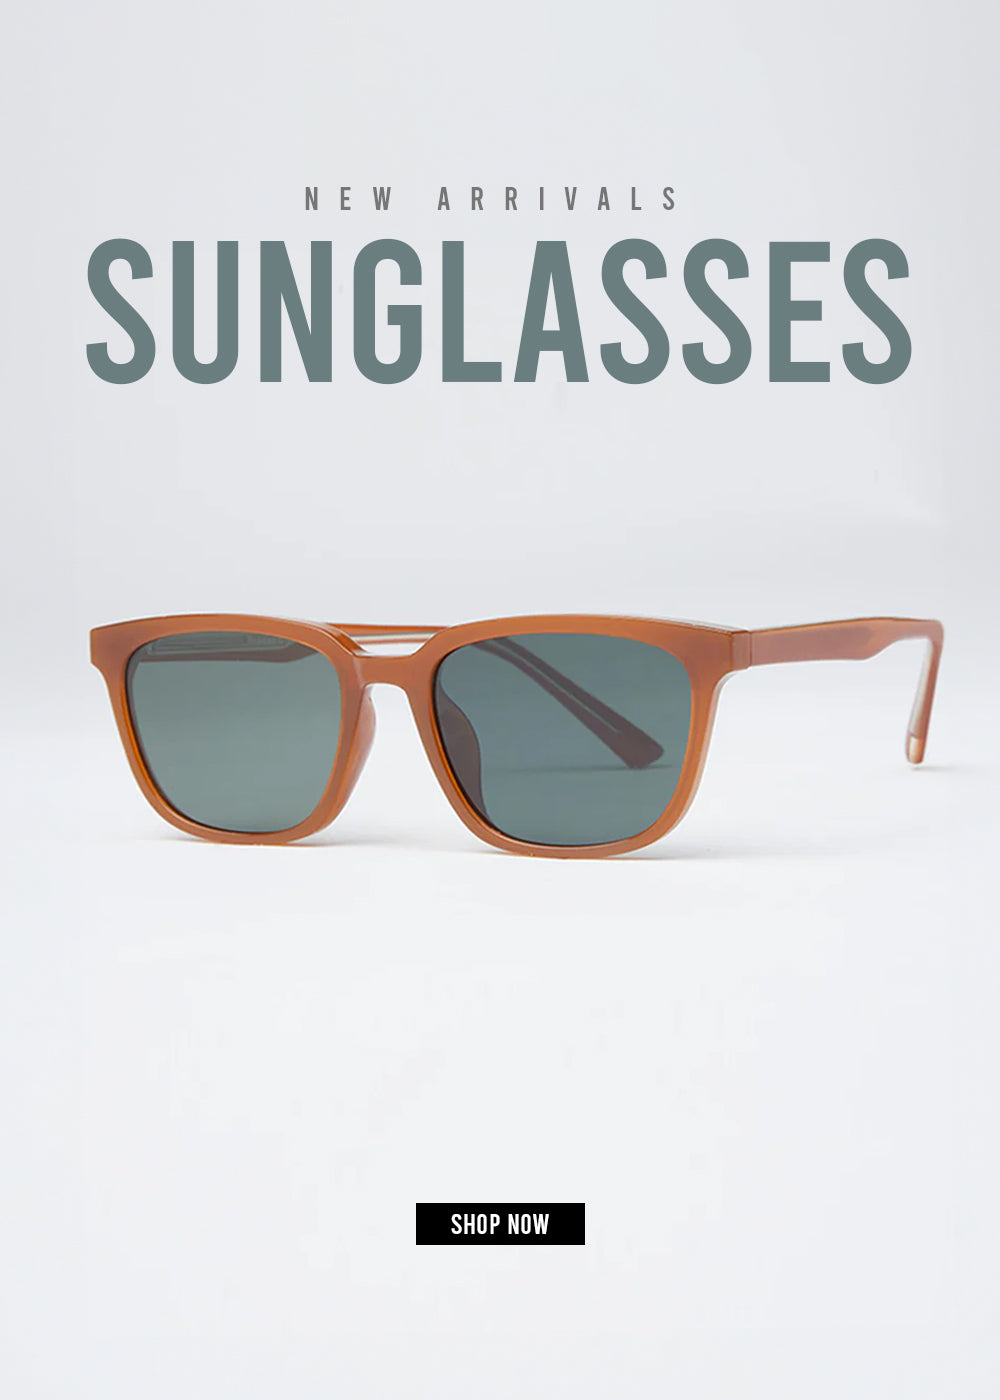 Sunglasses_Mobile